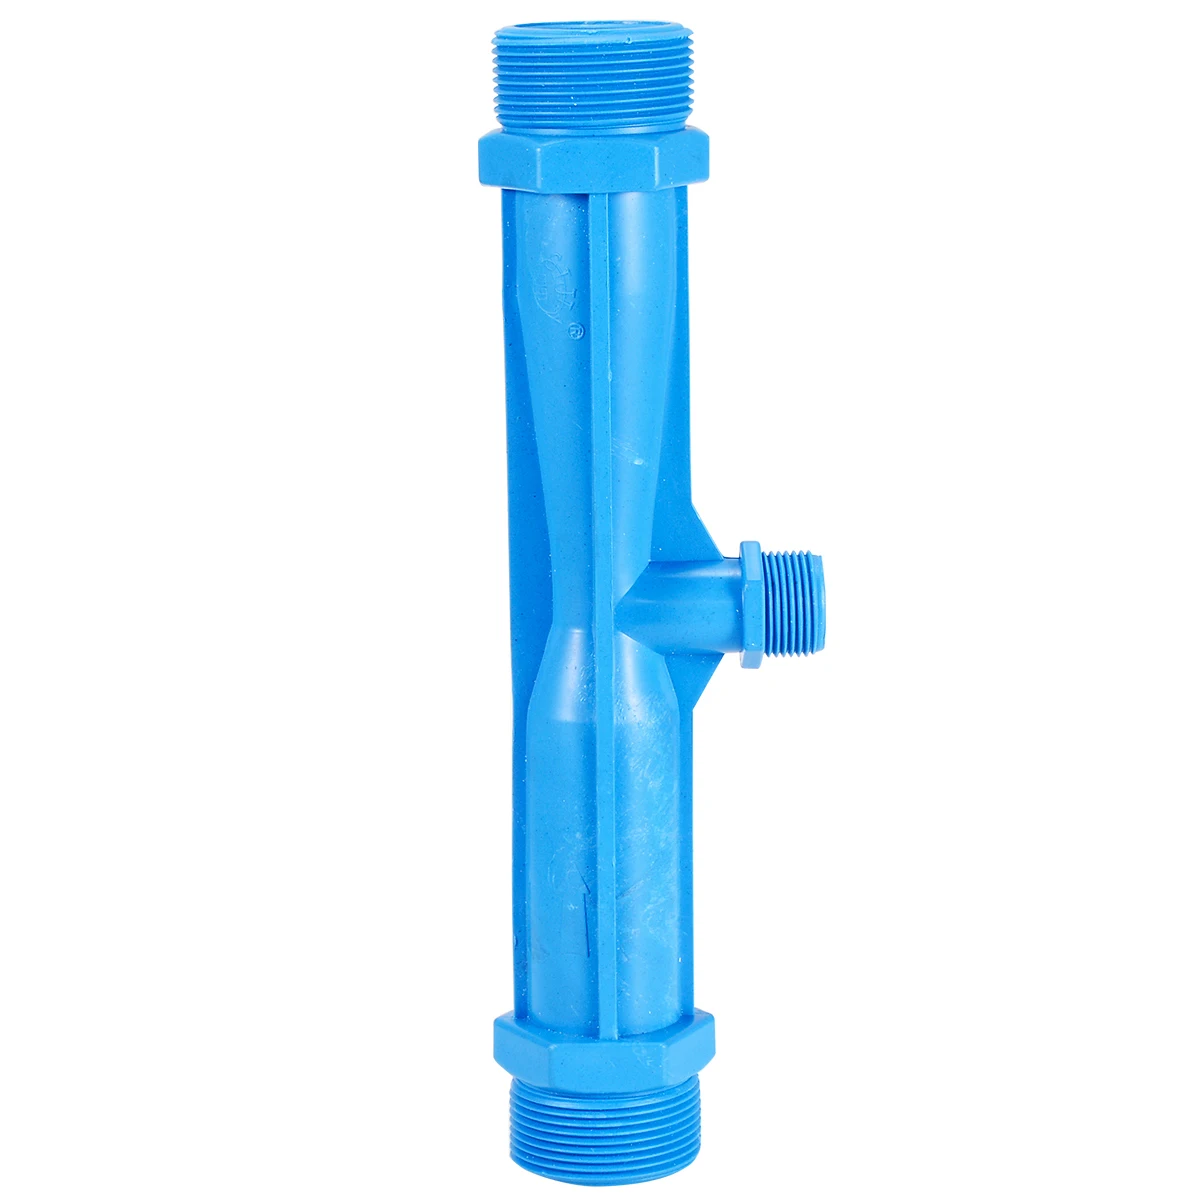 Синяя ирригационная трубка Вентури удобрения инжектор 2 дюймов для сельского хозяйства водяная трубка нить для орошения капельного устройства садовые инструменты для полива